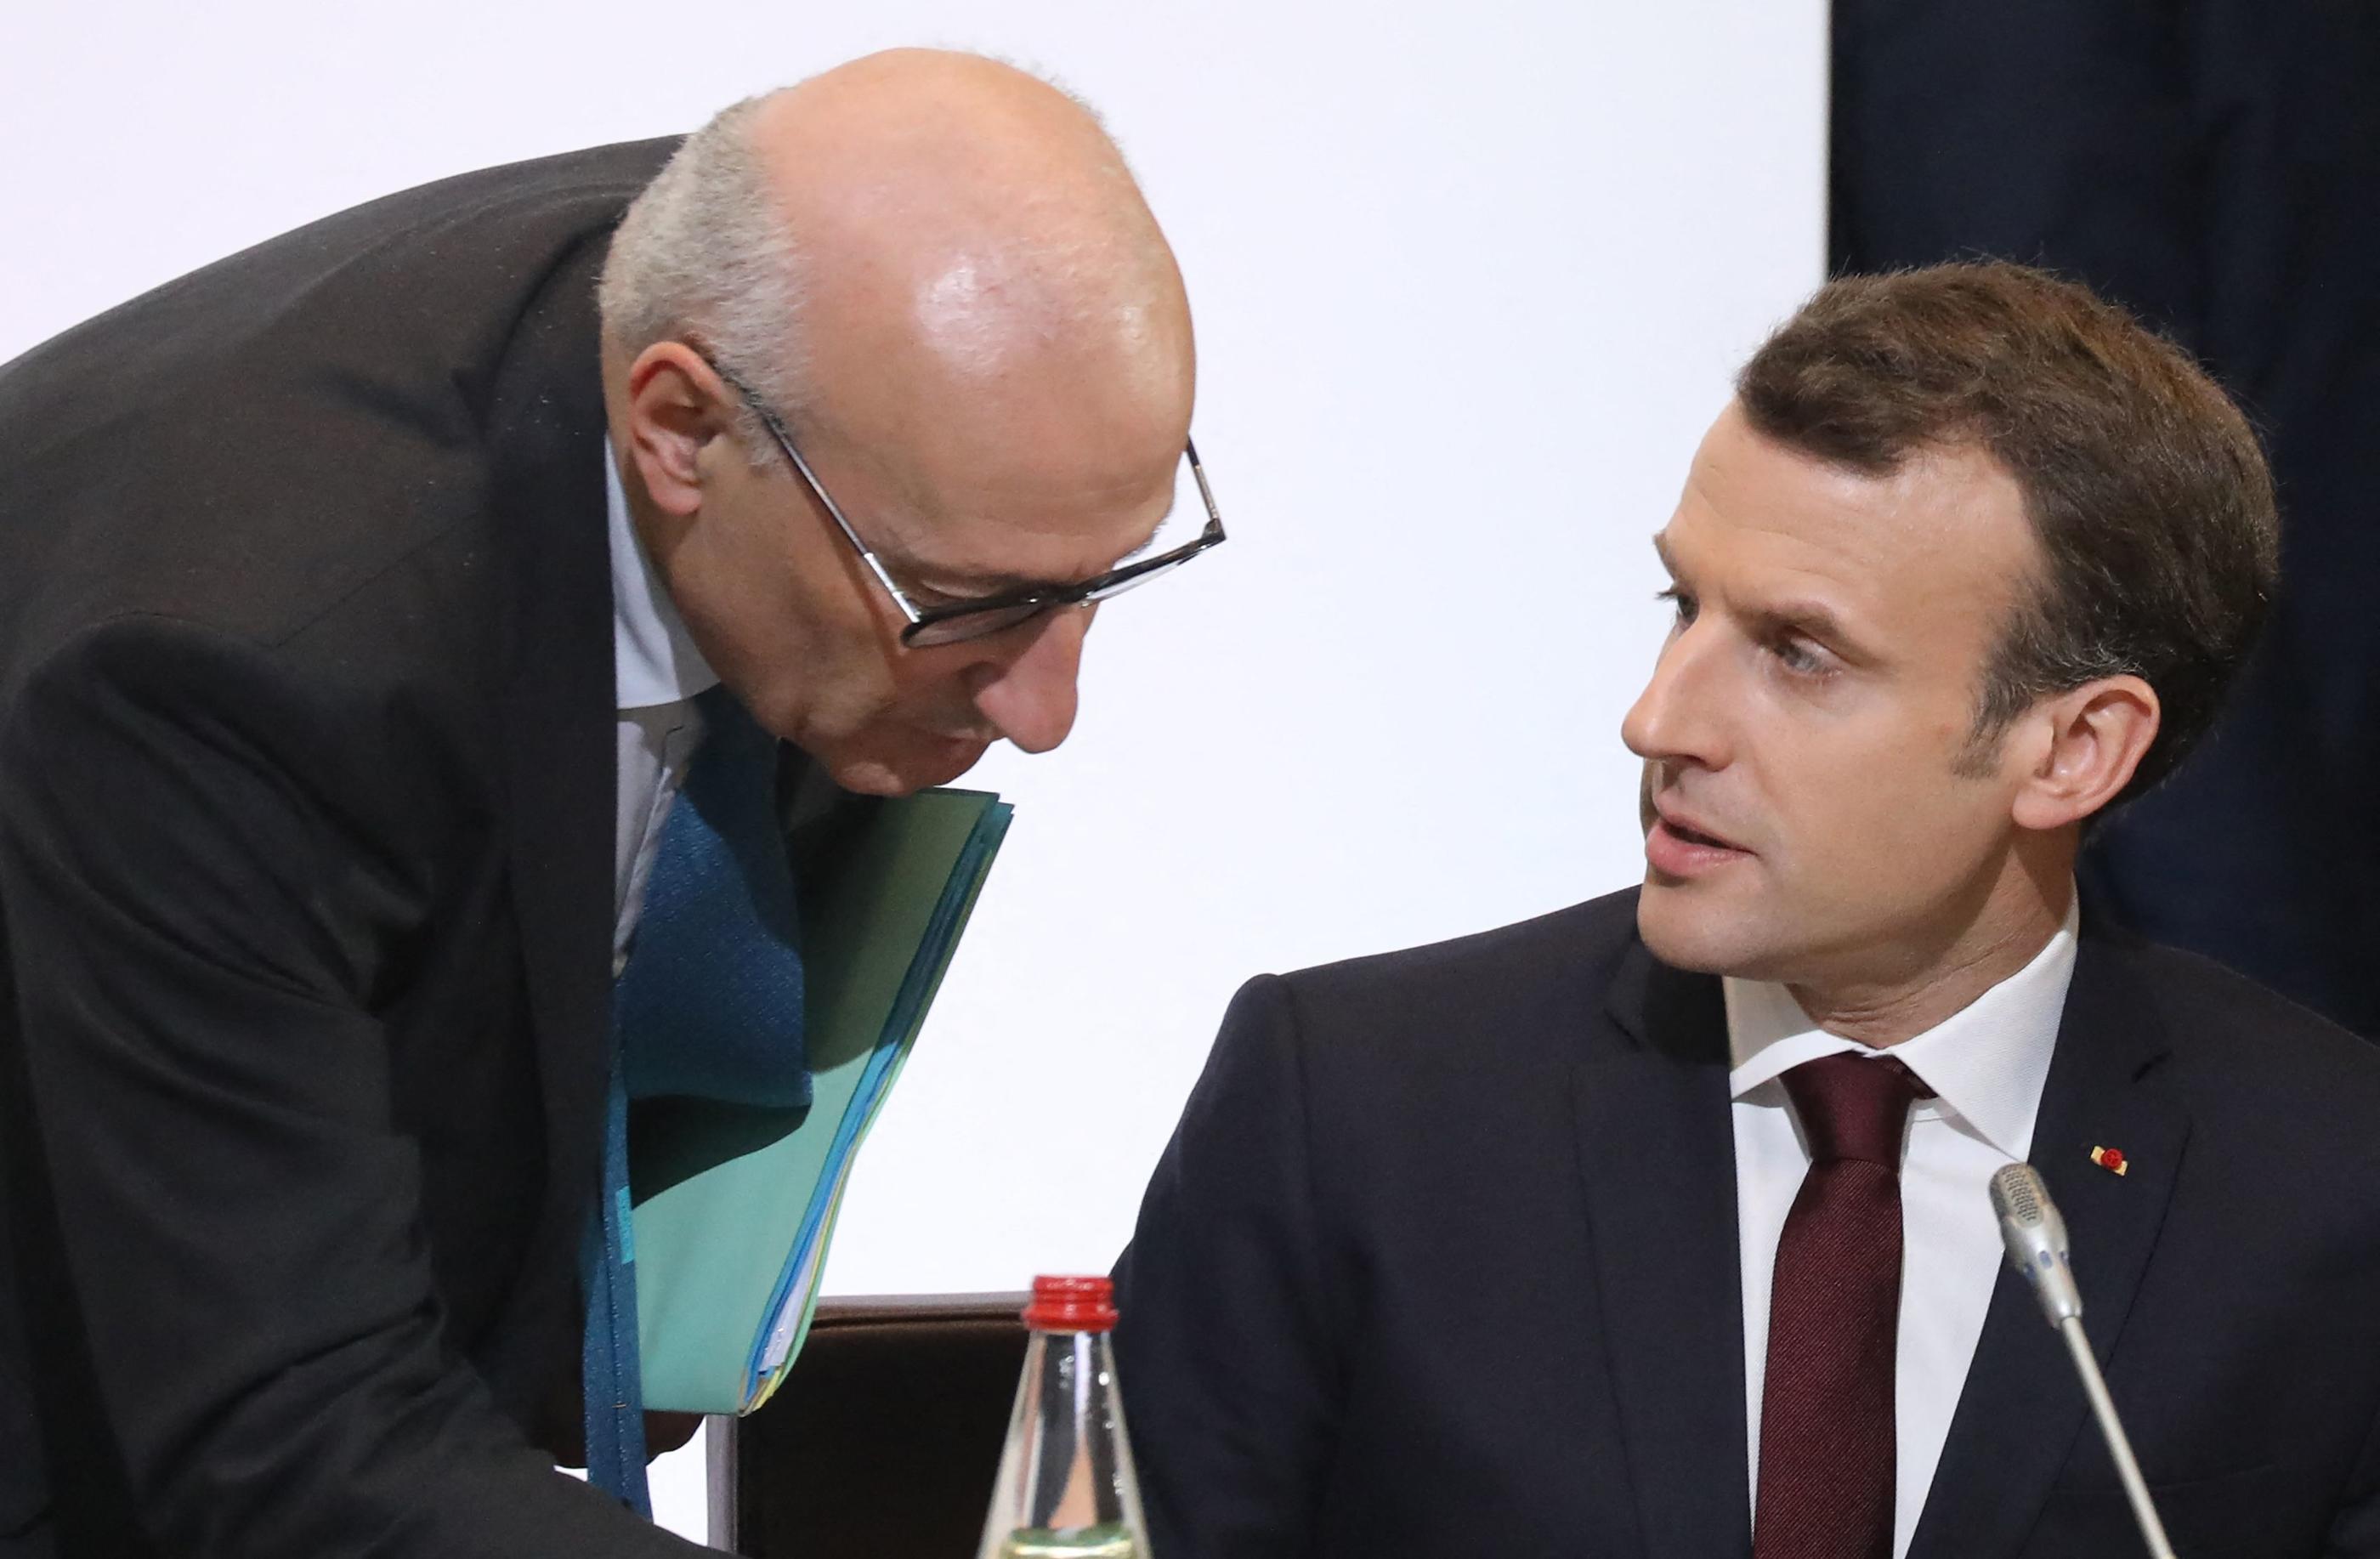 L'ambassadeur de France aux Etats-Unis, Philippe Etienne, aux côtés d'Emmanuel Macron en avril 2018. Ludovic MARIN/POOL/AFP